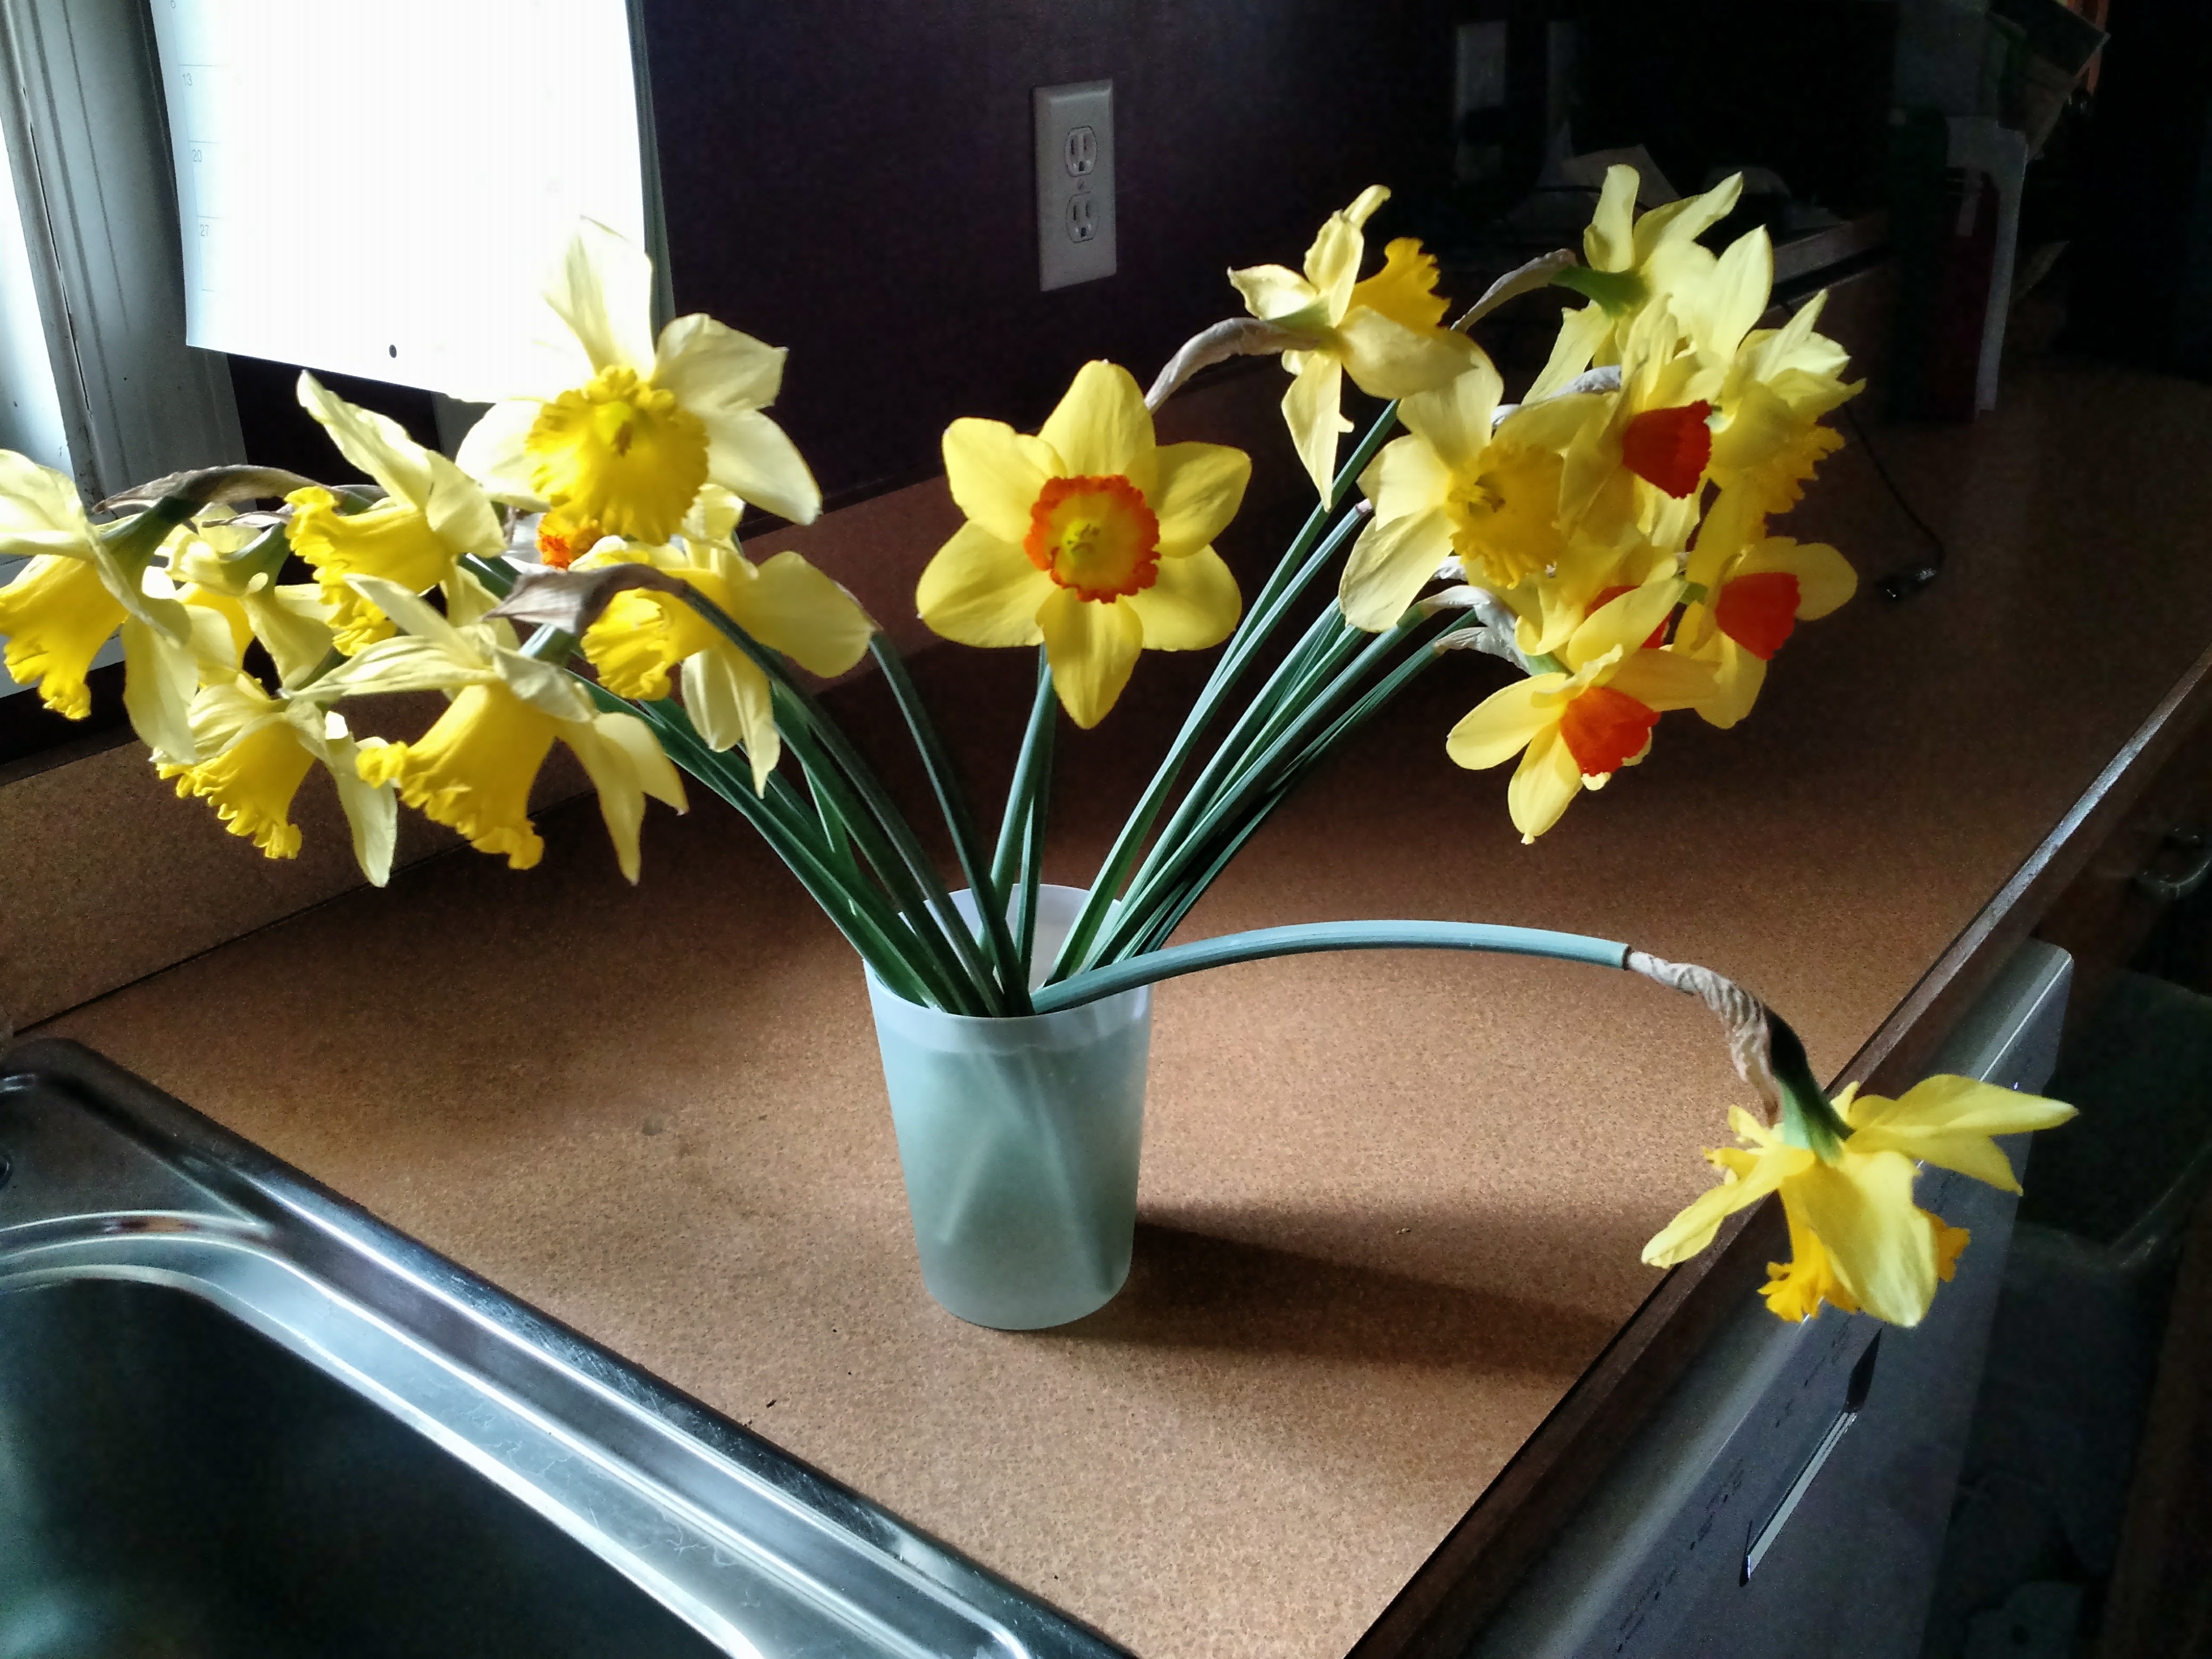 daffodils for cutting